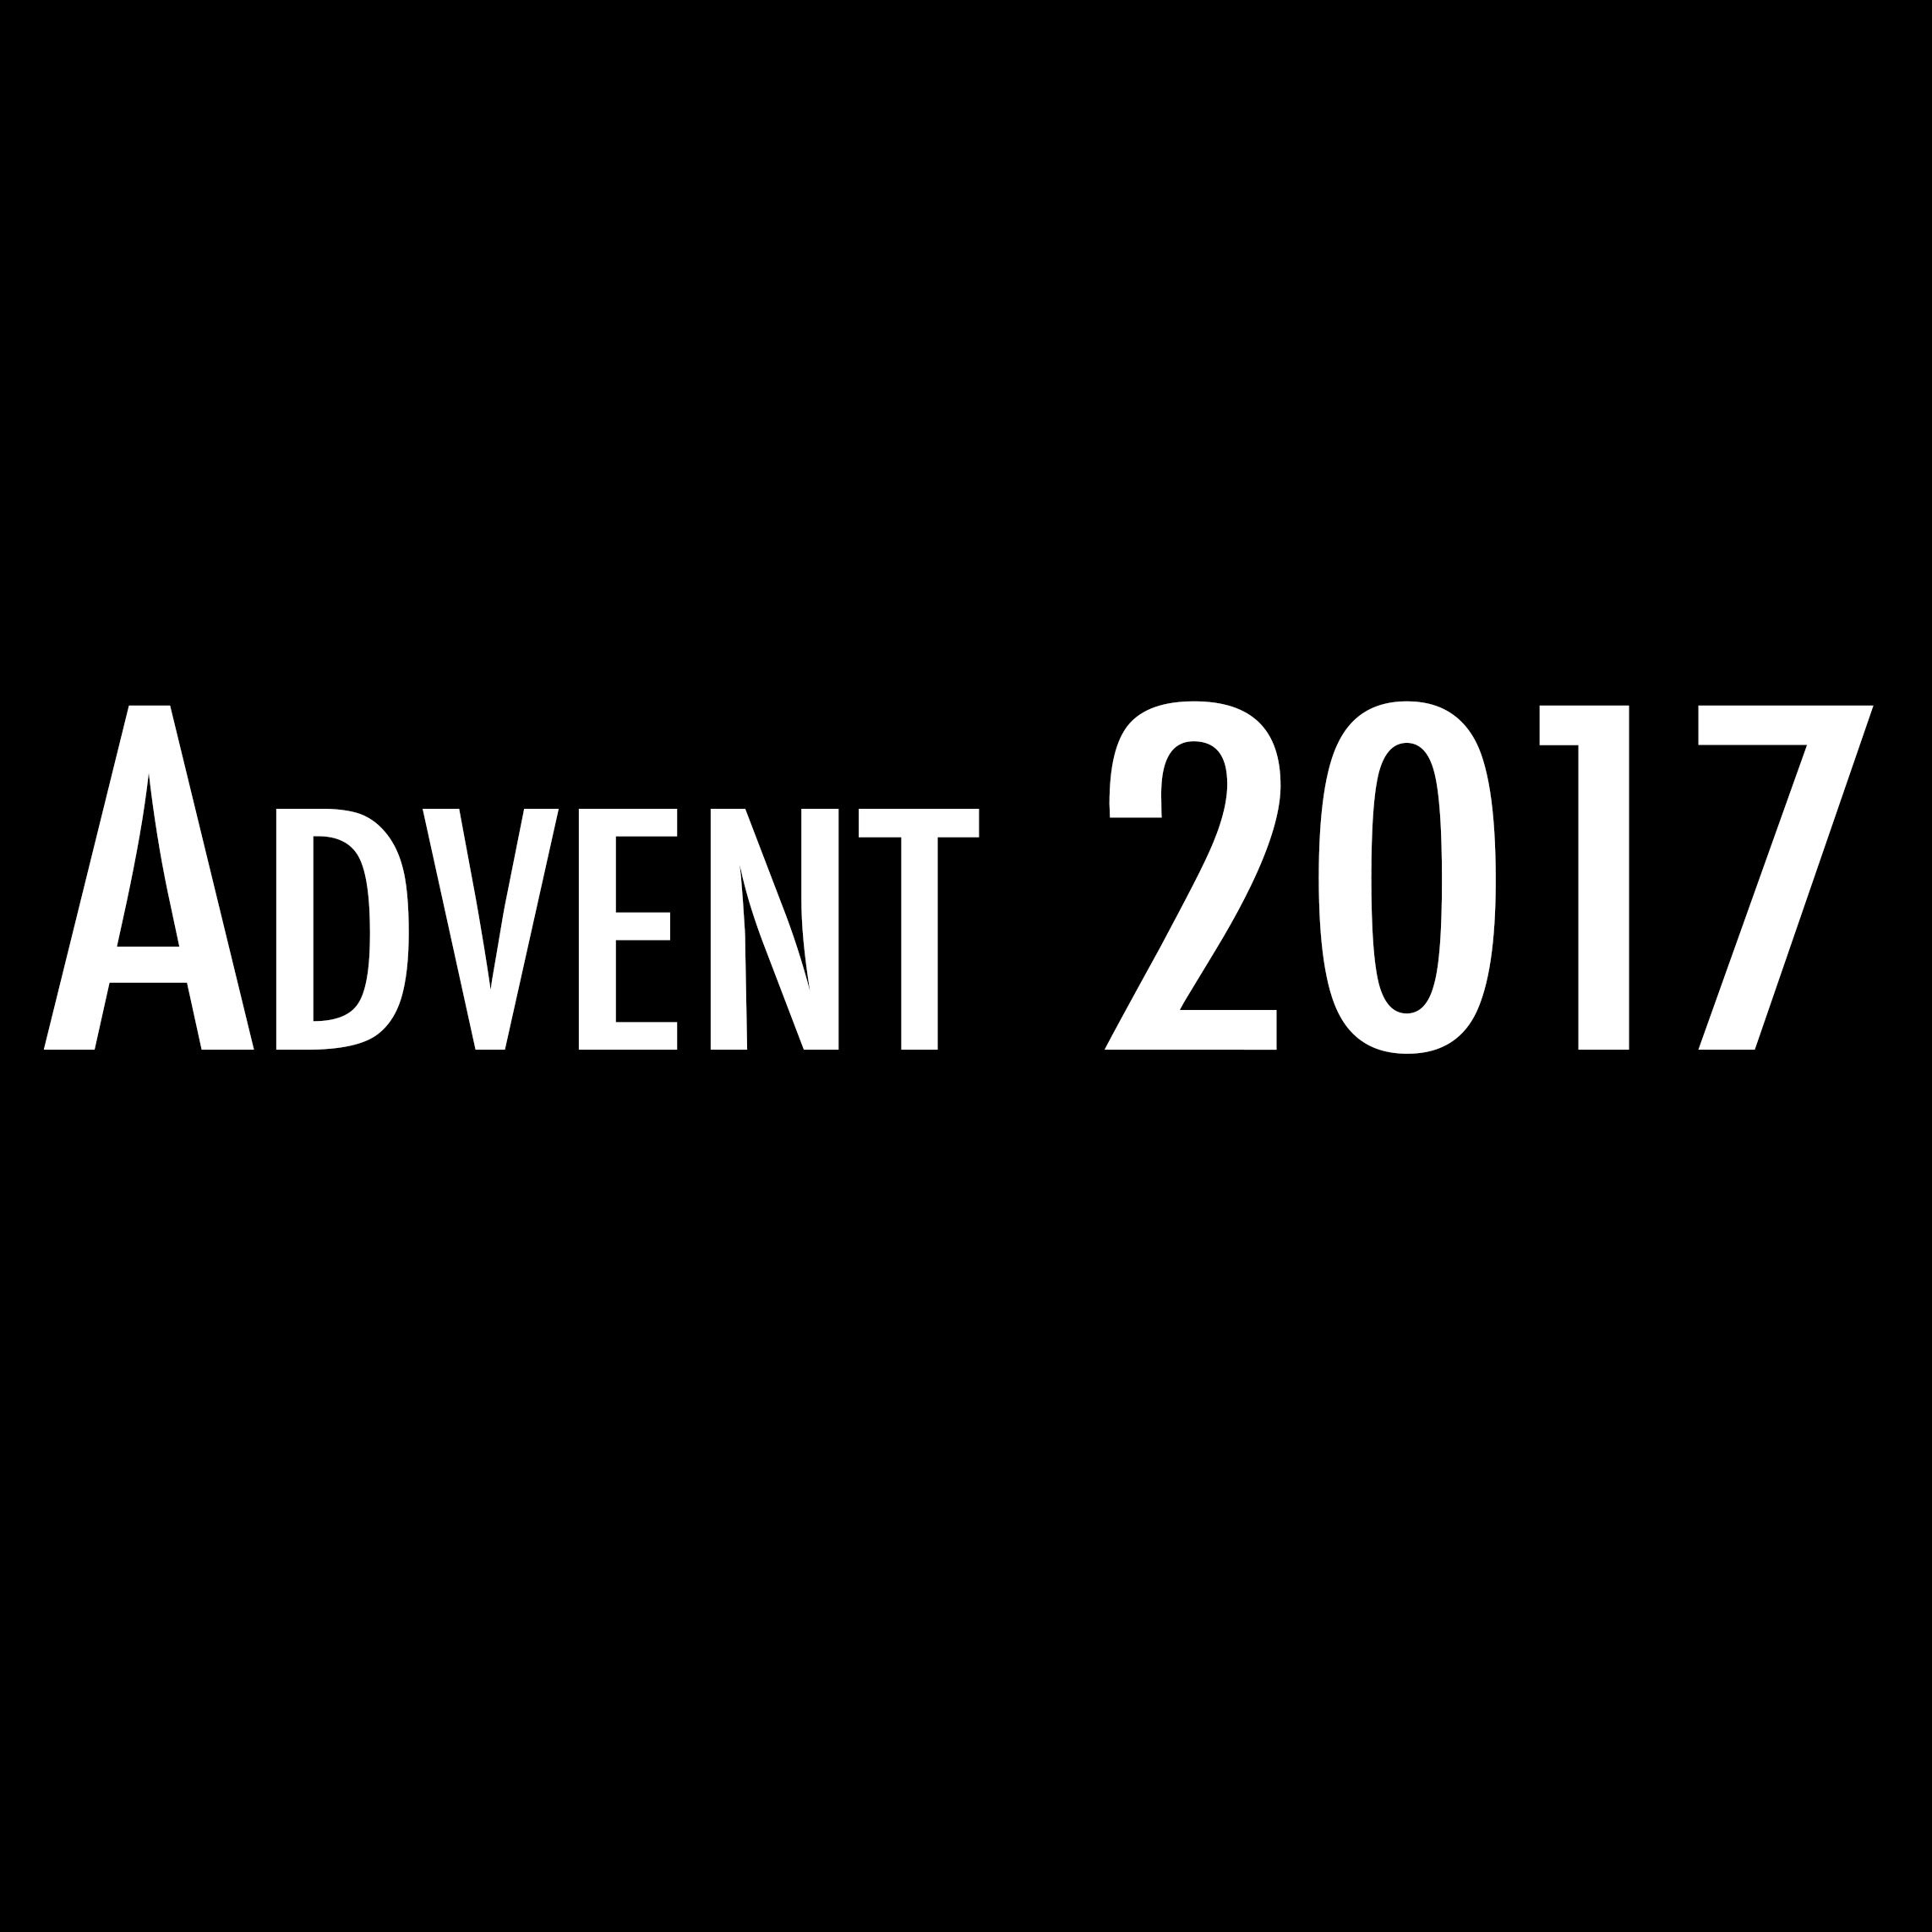 Advent 2017